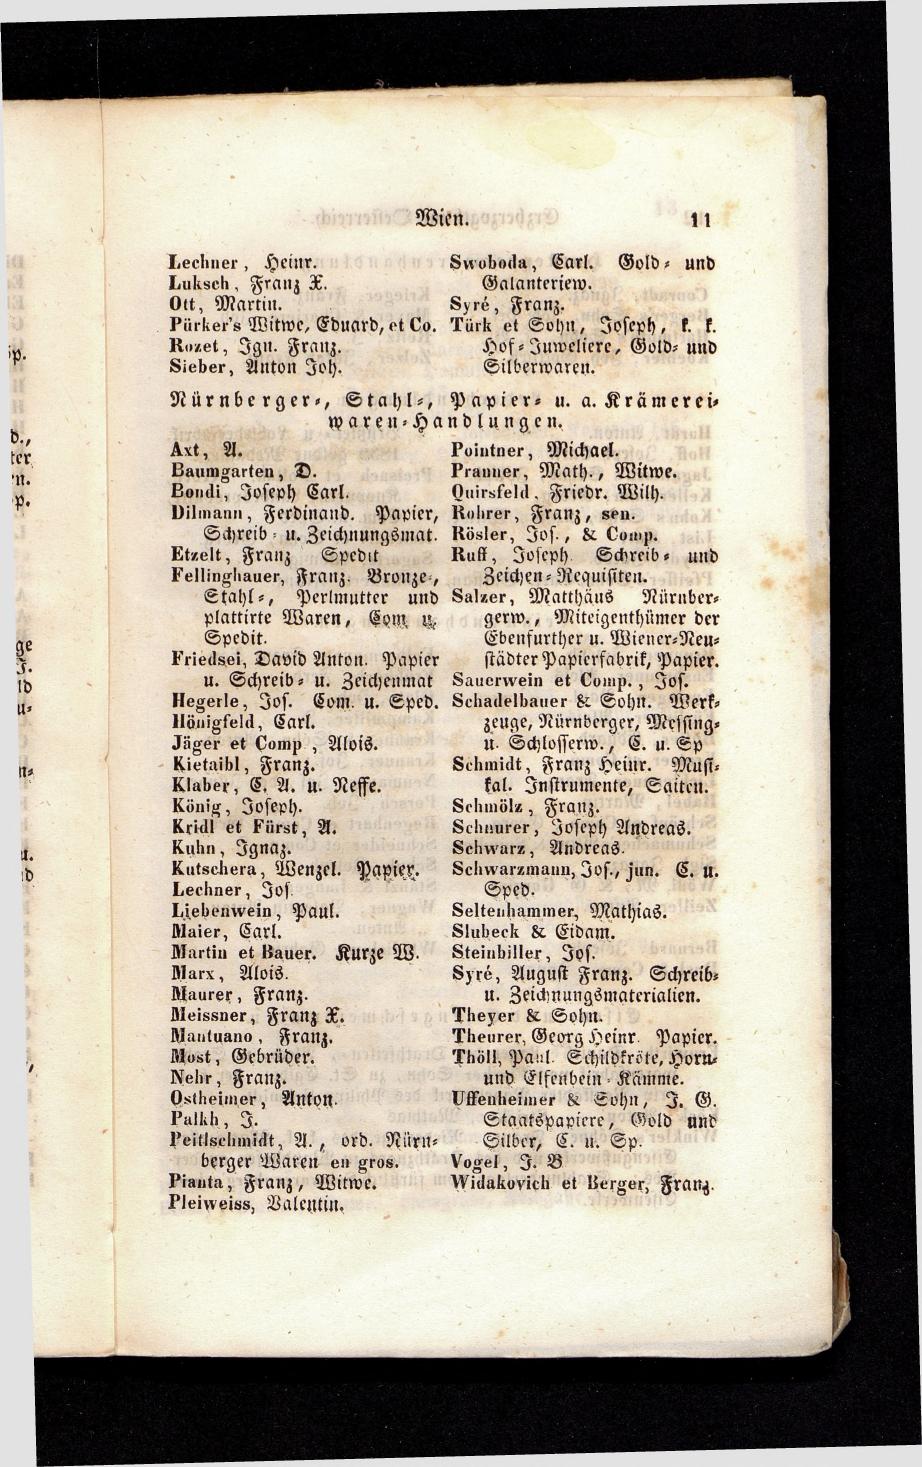 Grosses Adressbuch der Kaufleute. No. 13. Oesterreich ober u. unter der Enns 1844 - Seite 15